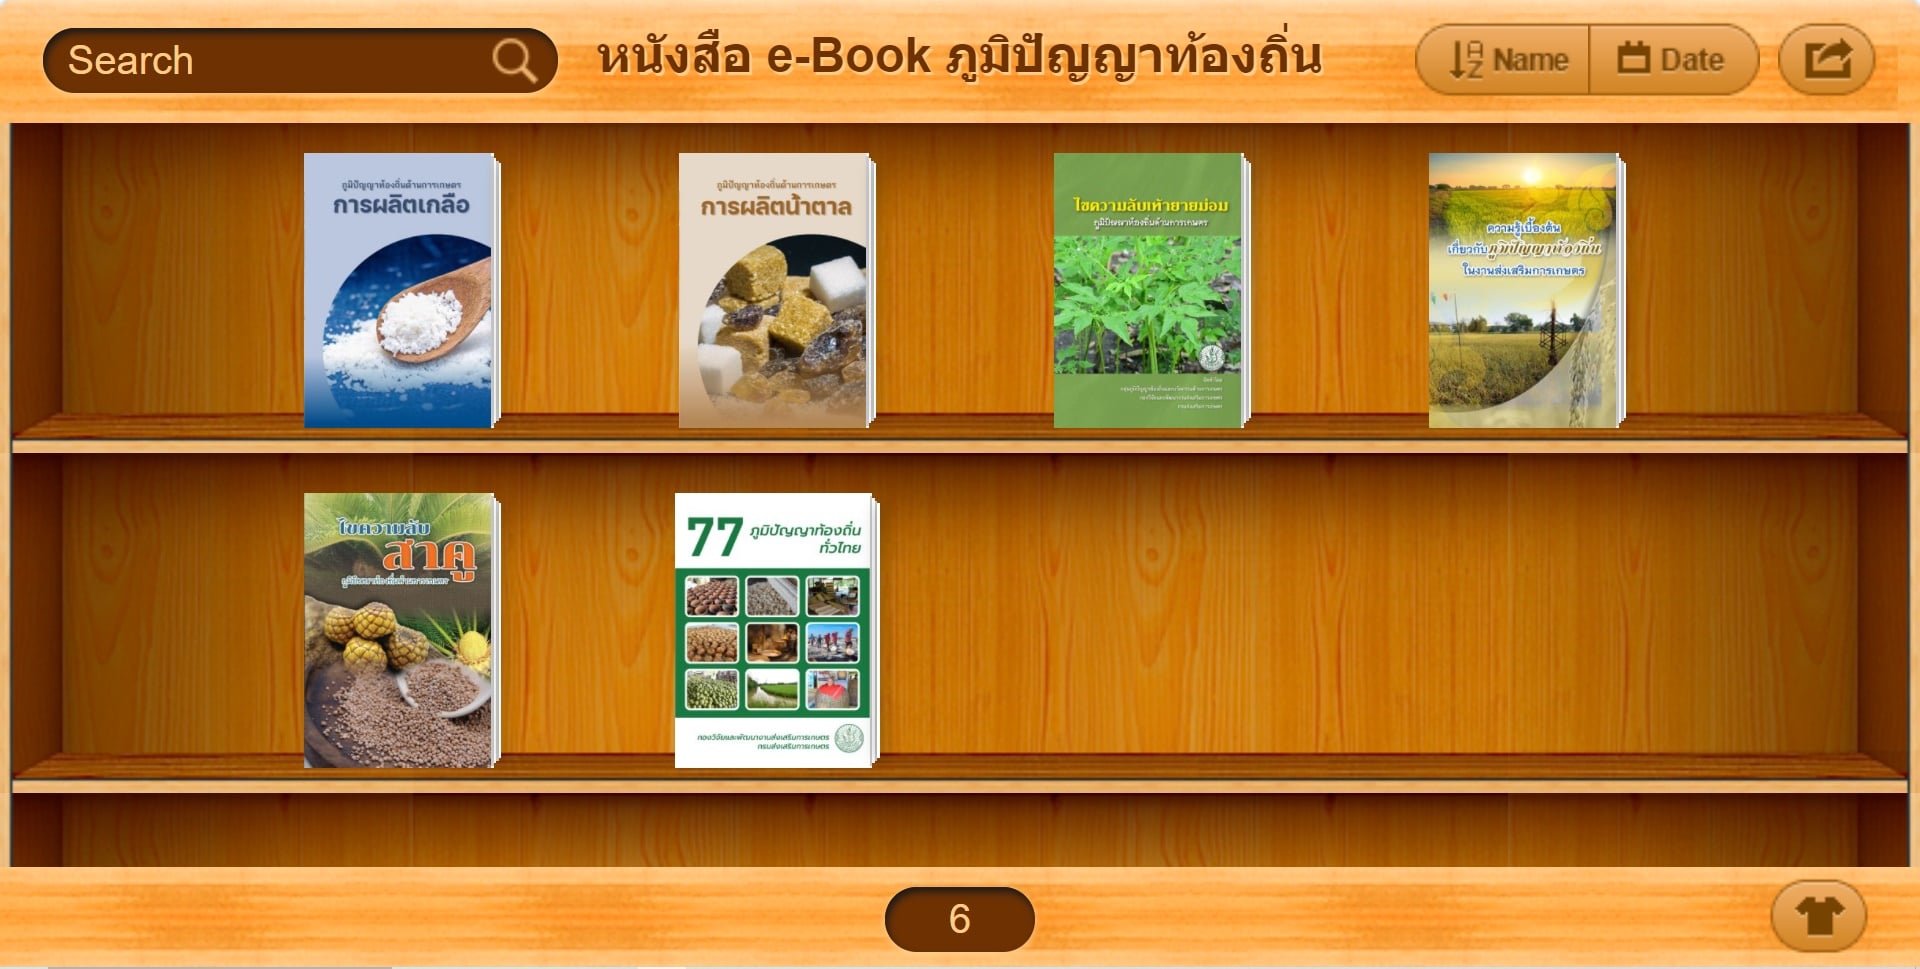 ประชาสัมพันธ์ หนังสือ e-Book ภูมิปัญญาท้องถิ่นด้านการเกษตร